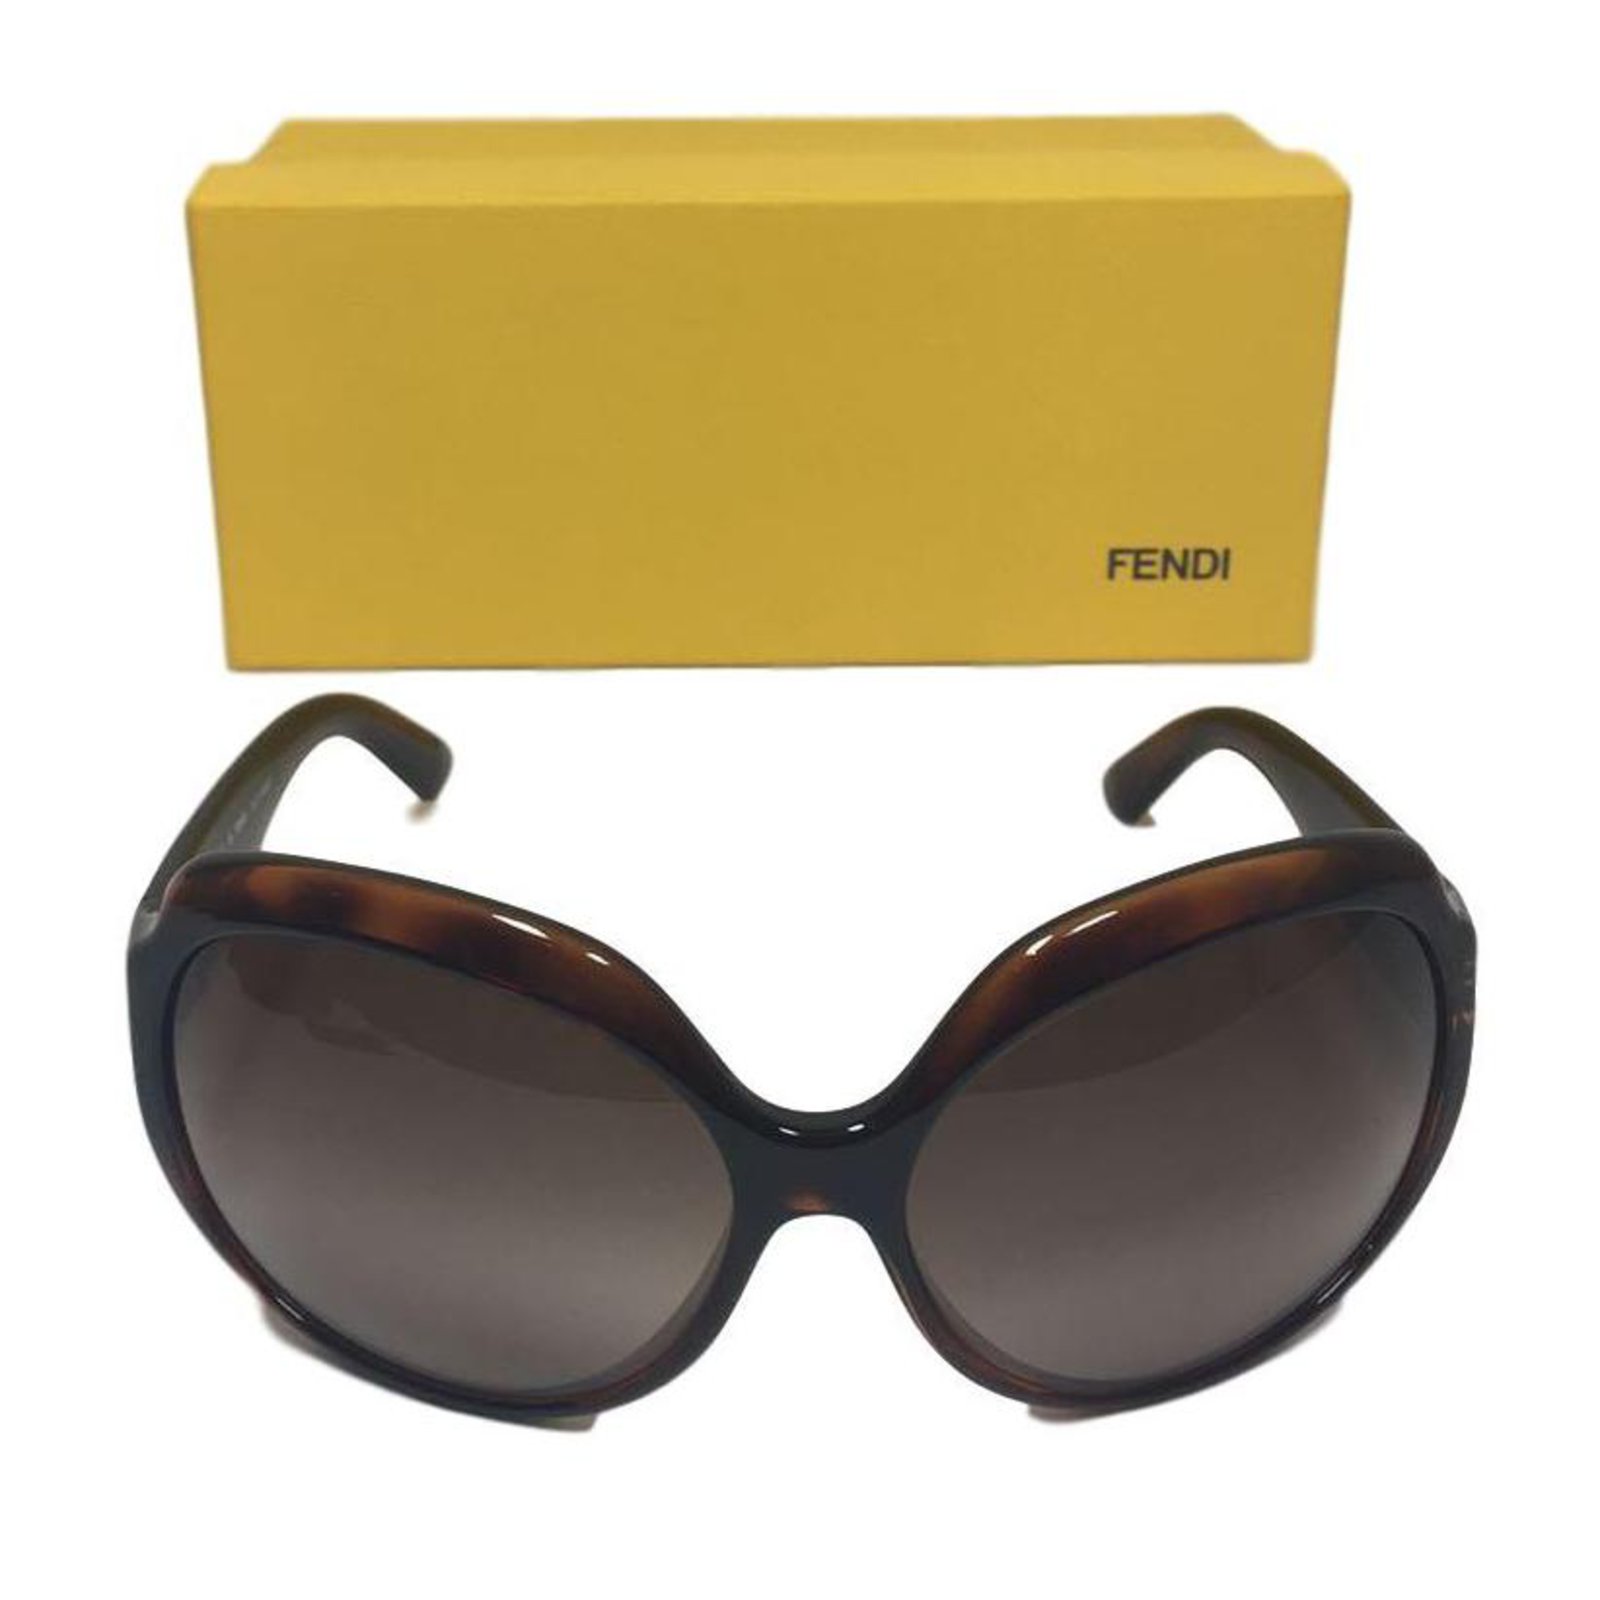 fendi sunglasses 2018 women's